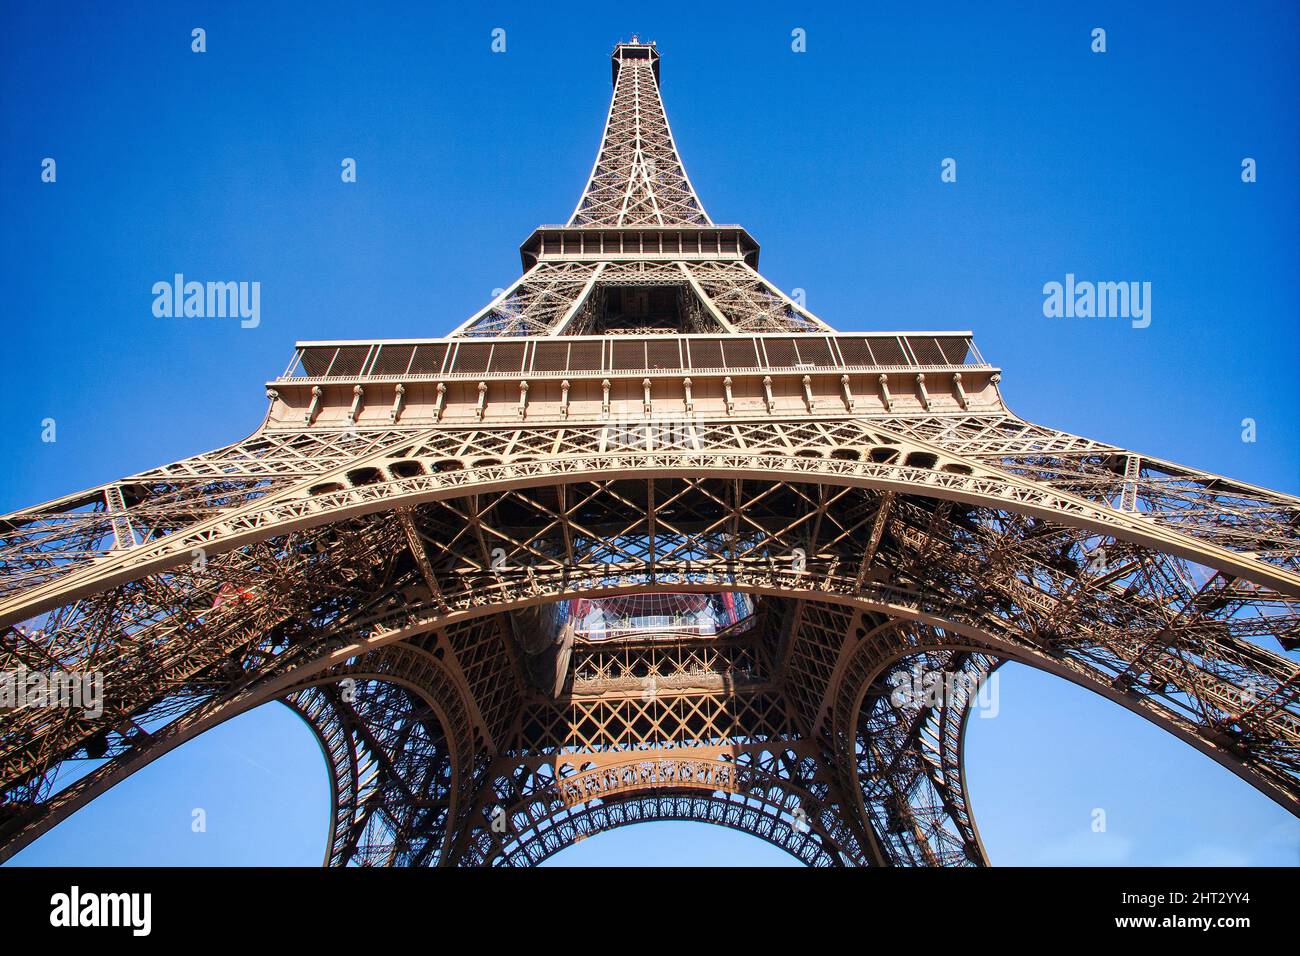 La Tour Eiffel s'élève bien en vue dans un ciel bleu de Paris. Banque D'Images